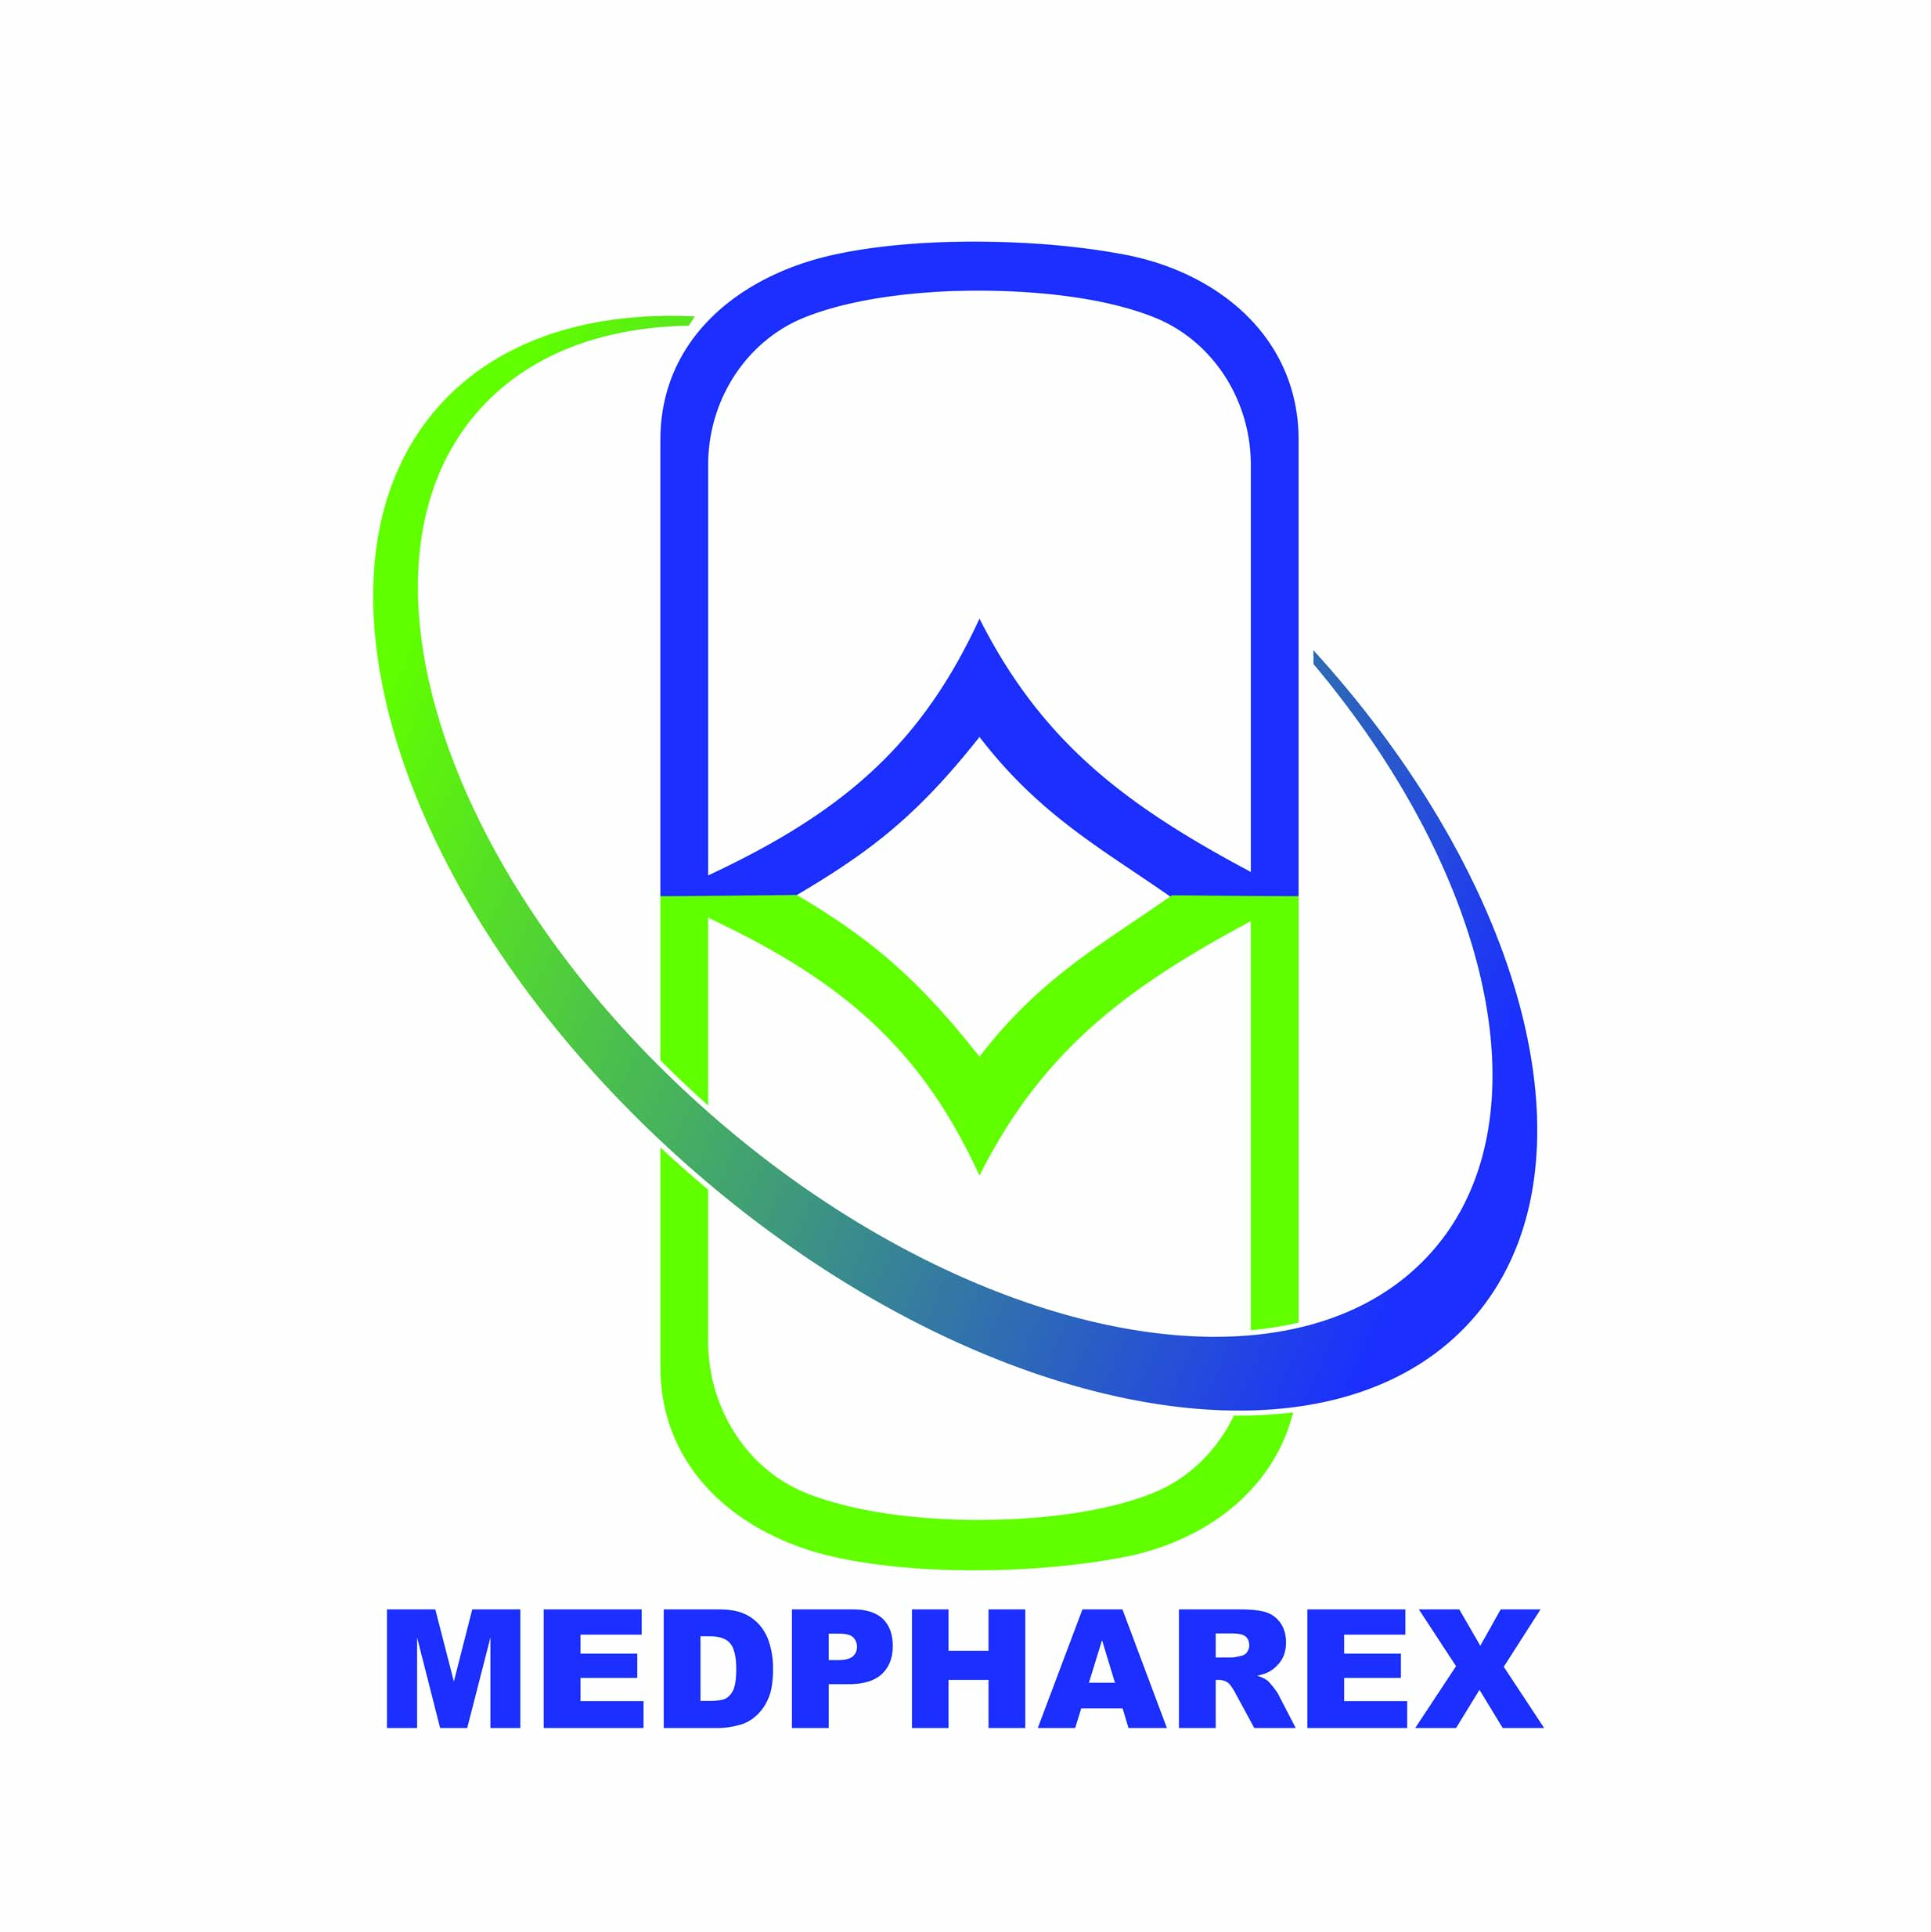 Medpharex